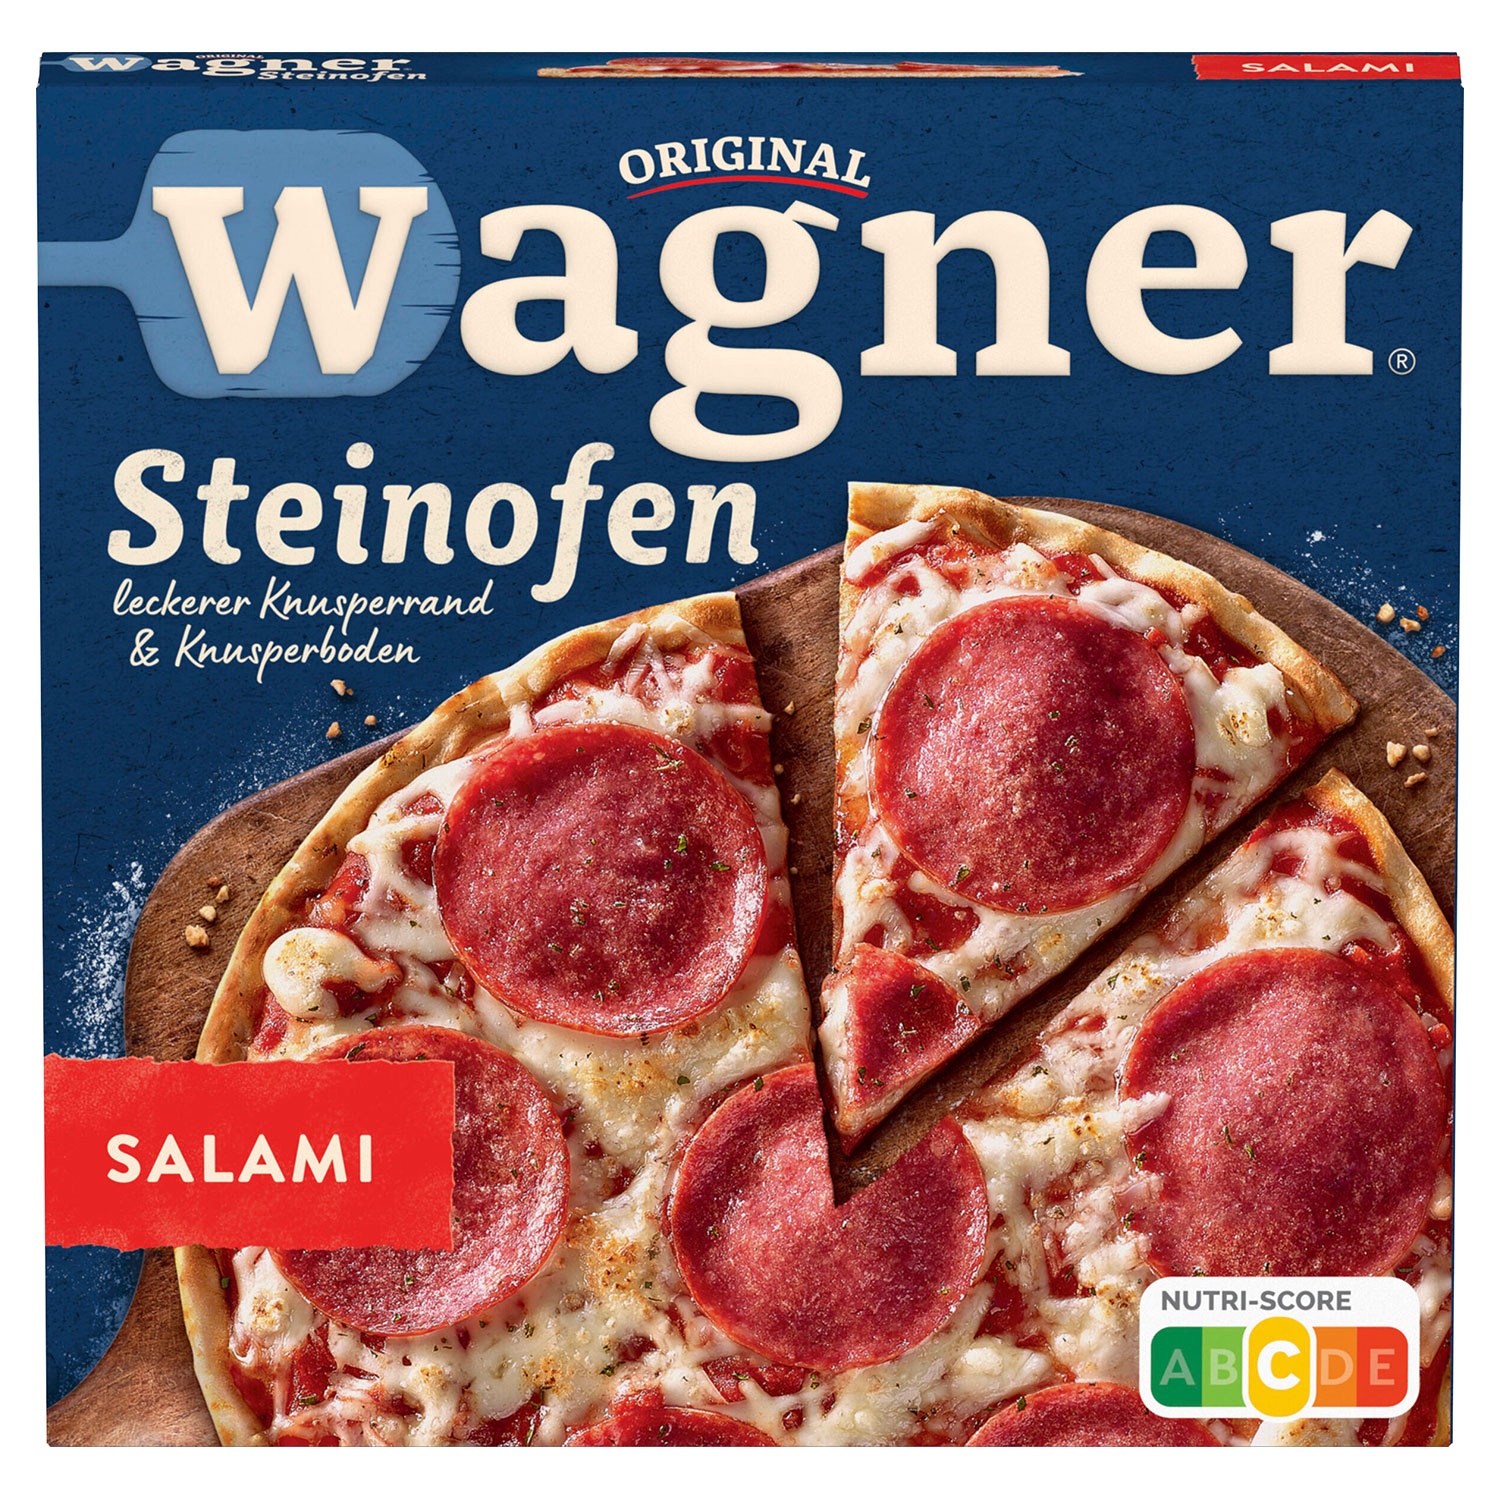 WAGNER Steinofen Pizza 320 g